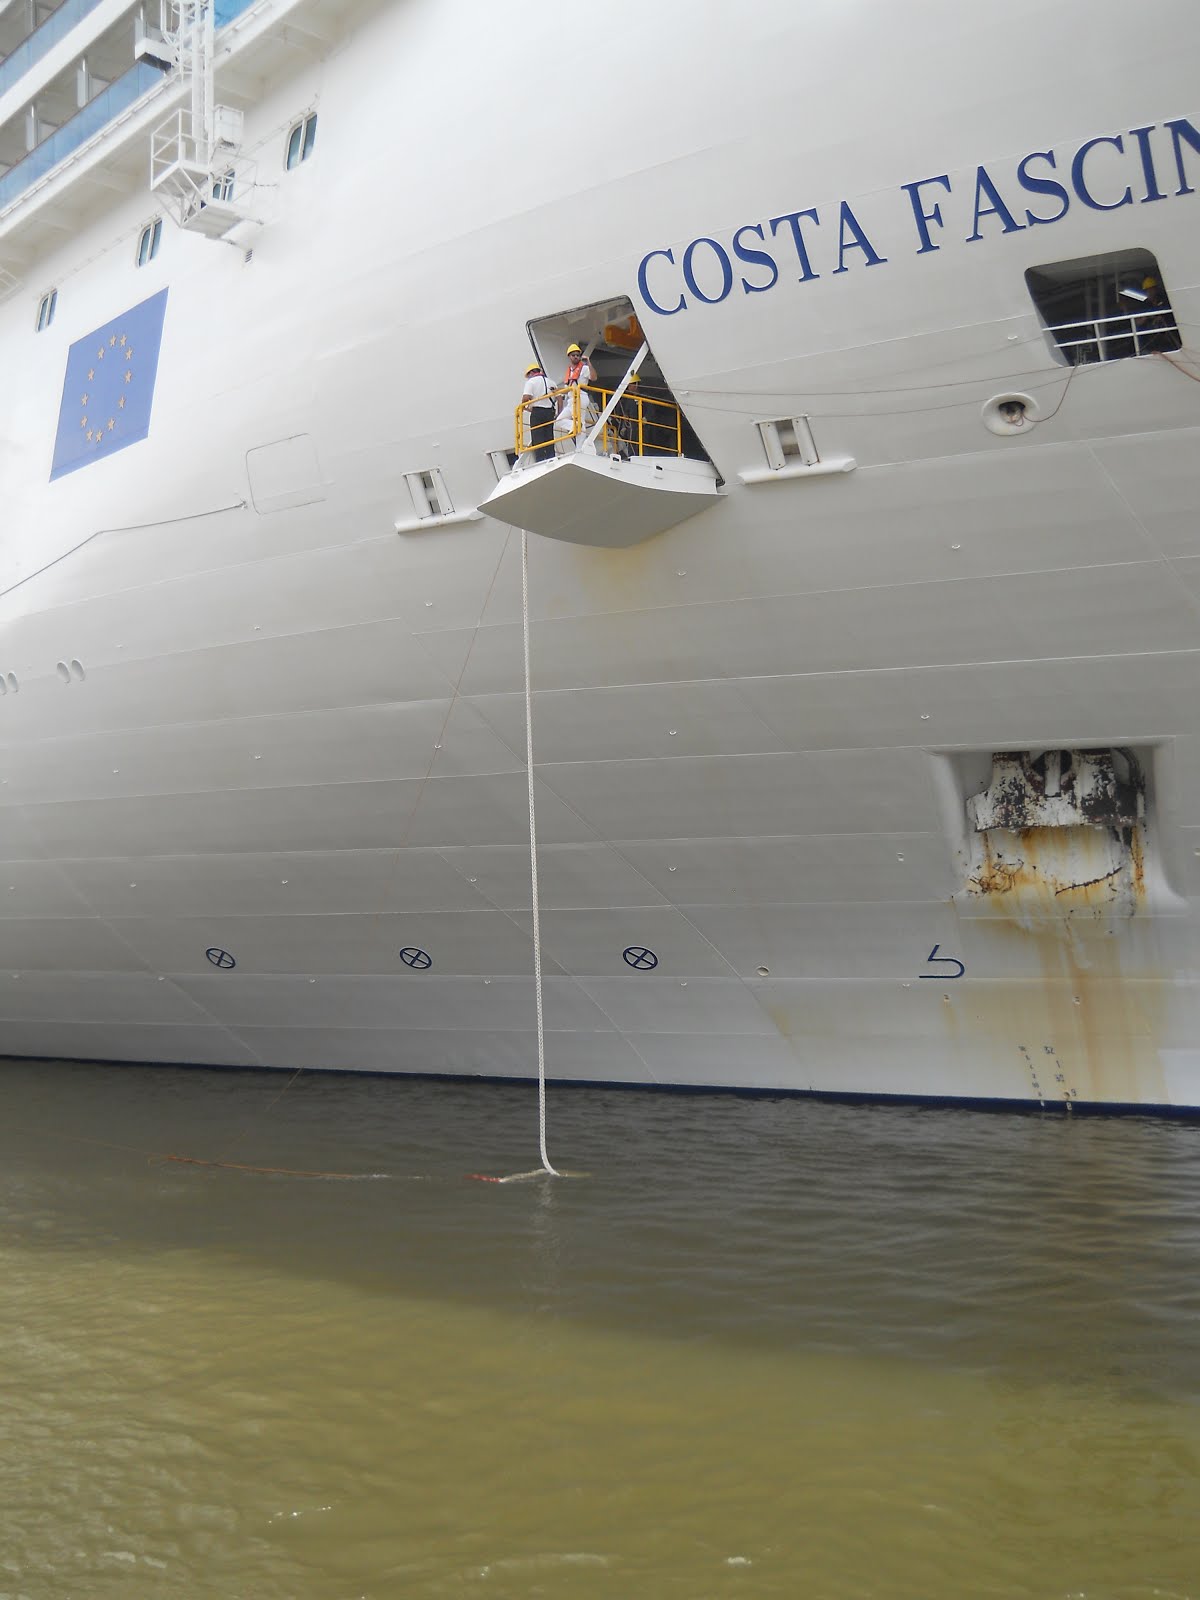 Cronica sobre visita del Crucero Costa Fascinosa - 30-1-2016